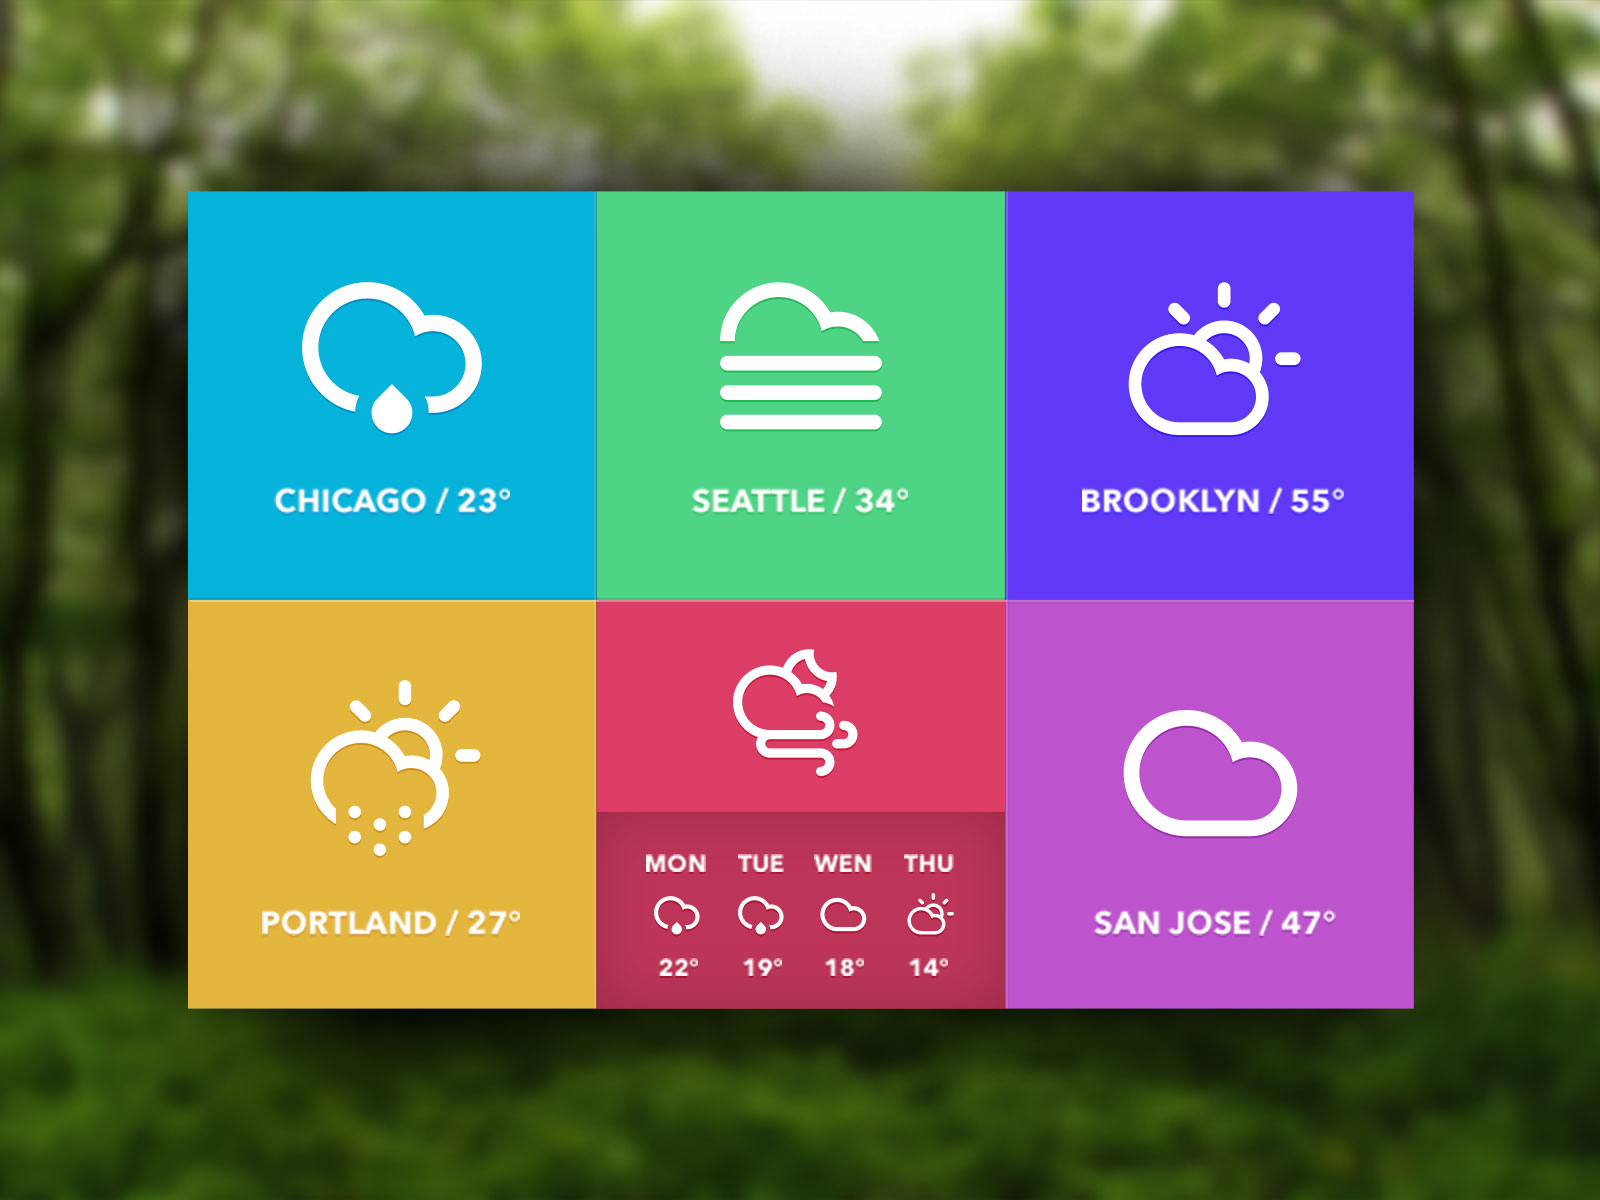 简洁大气的扁平化天气UI界面设计 .psd素材